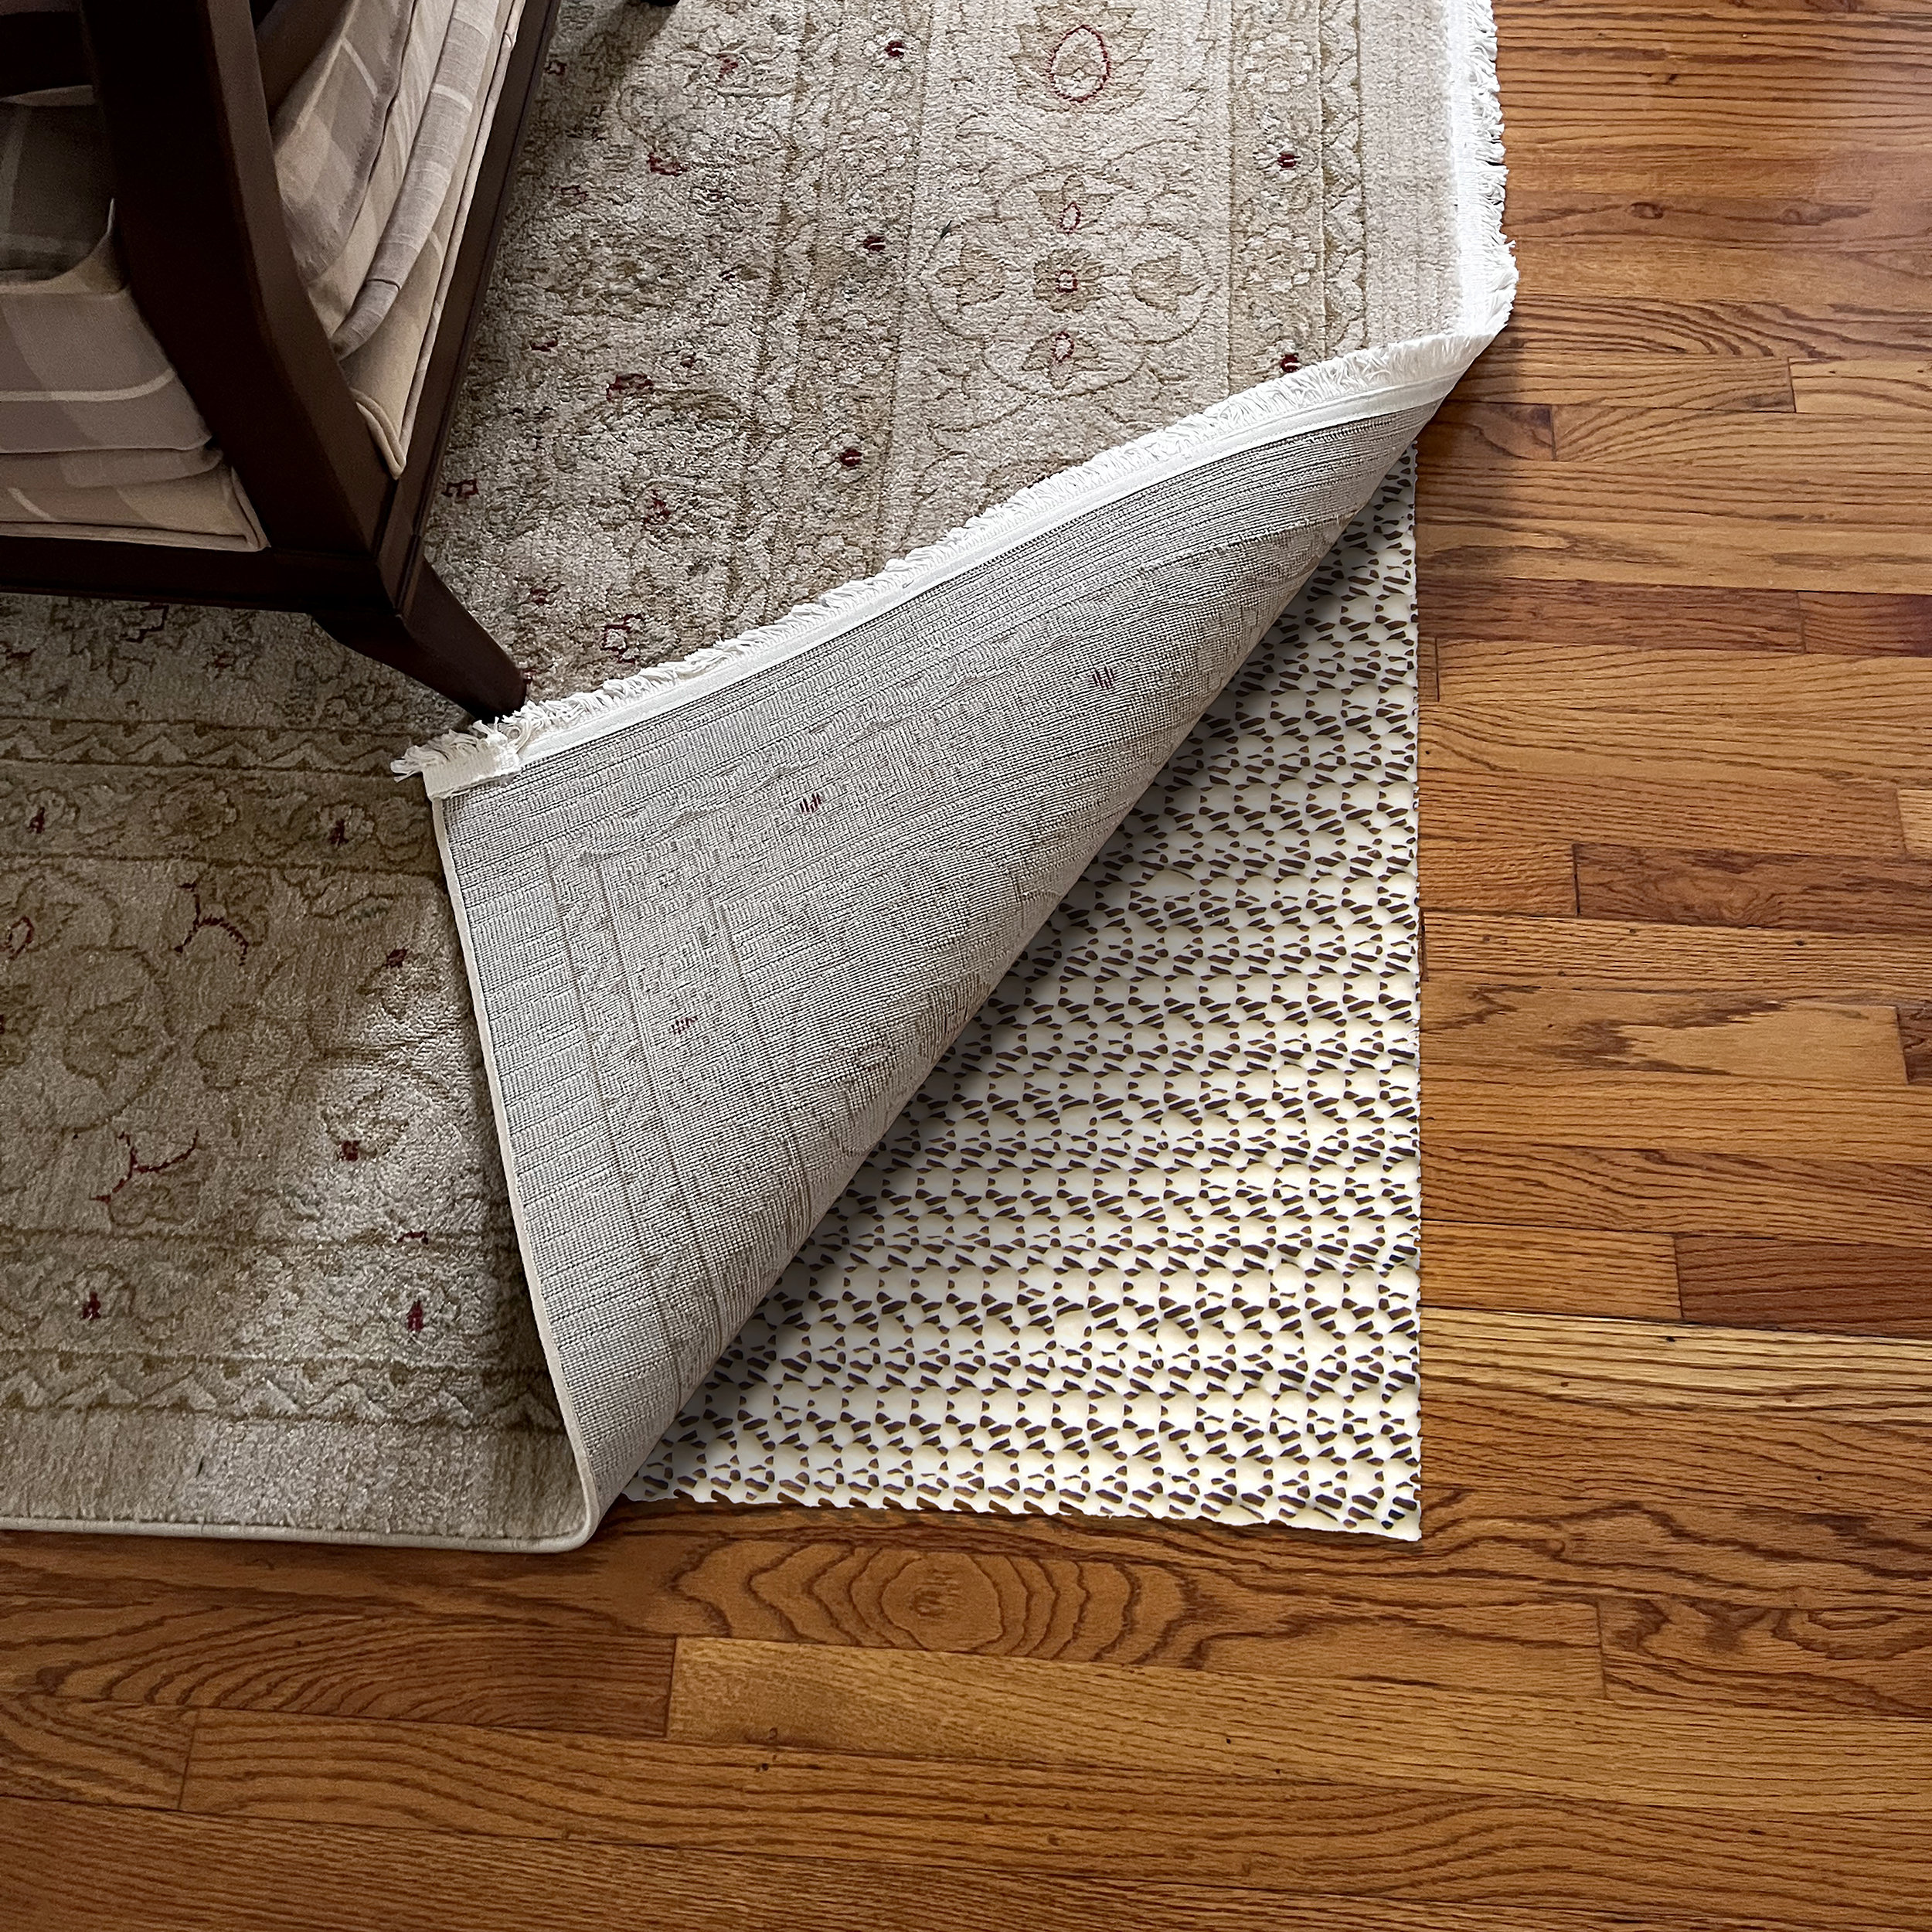 Non-slip Rug Pad Carpet Gripper, Thickened Felt Under Carpet For